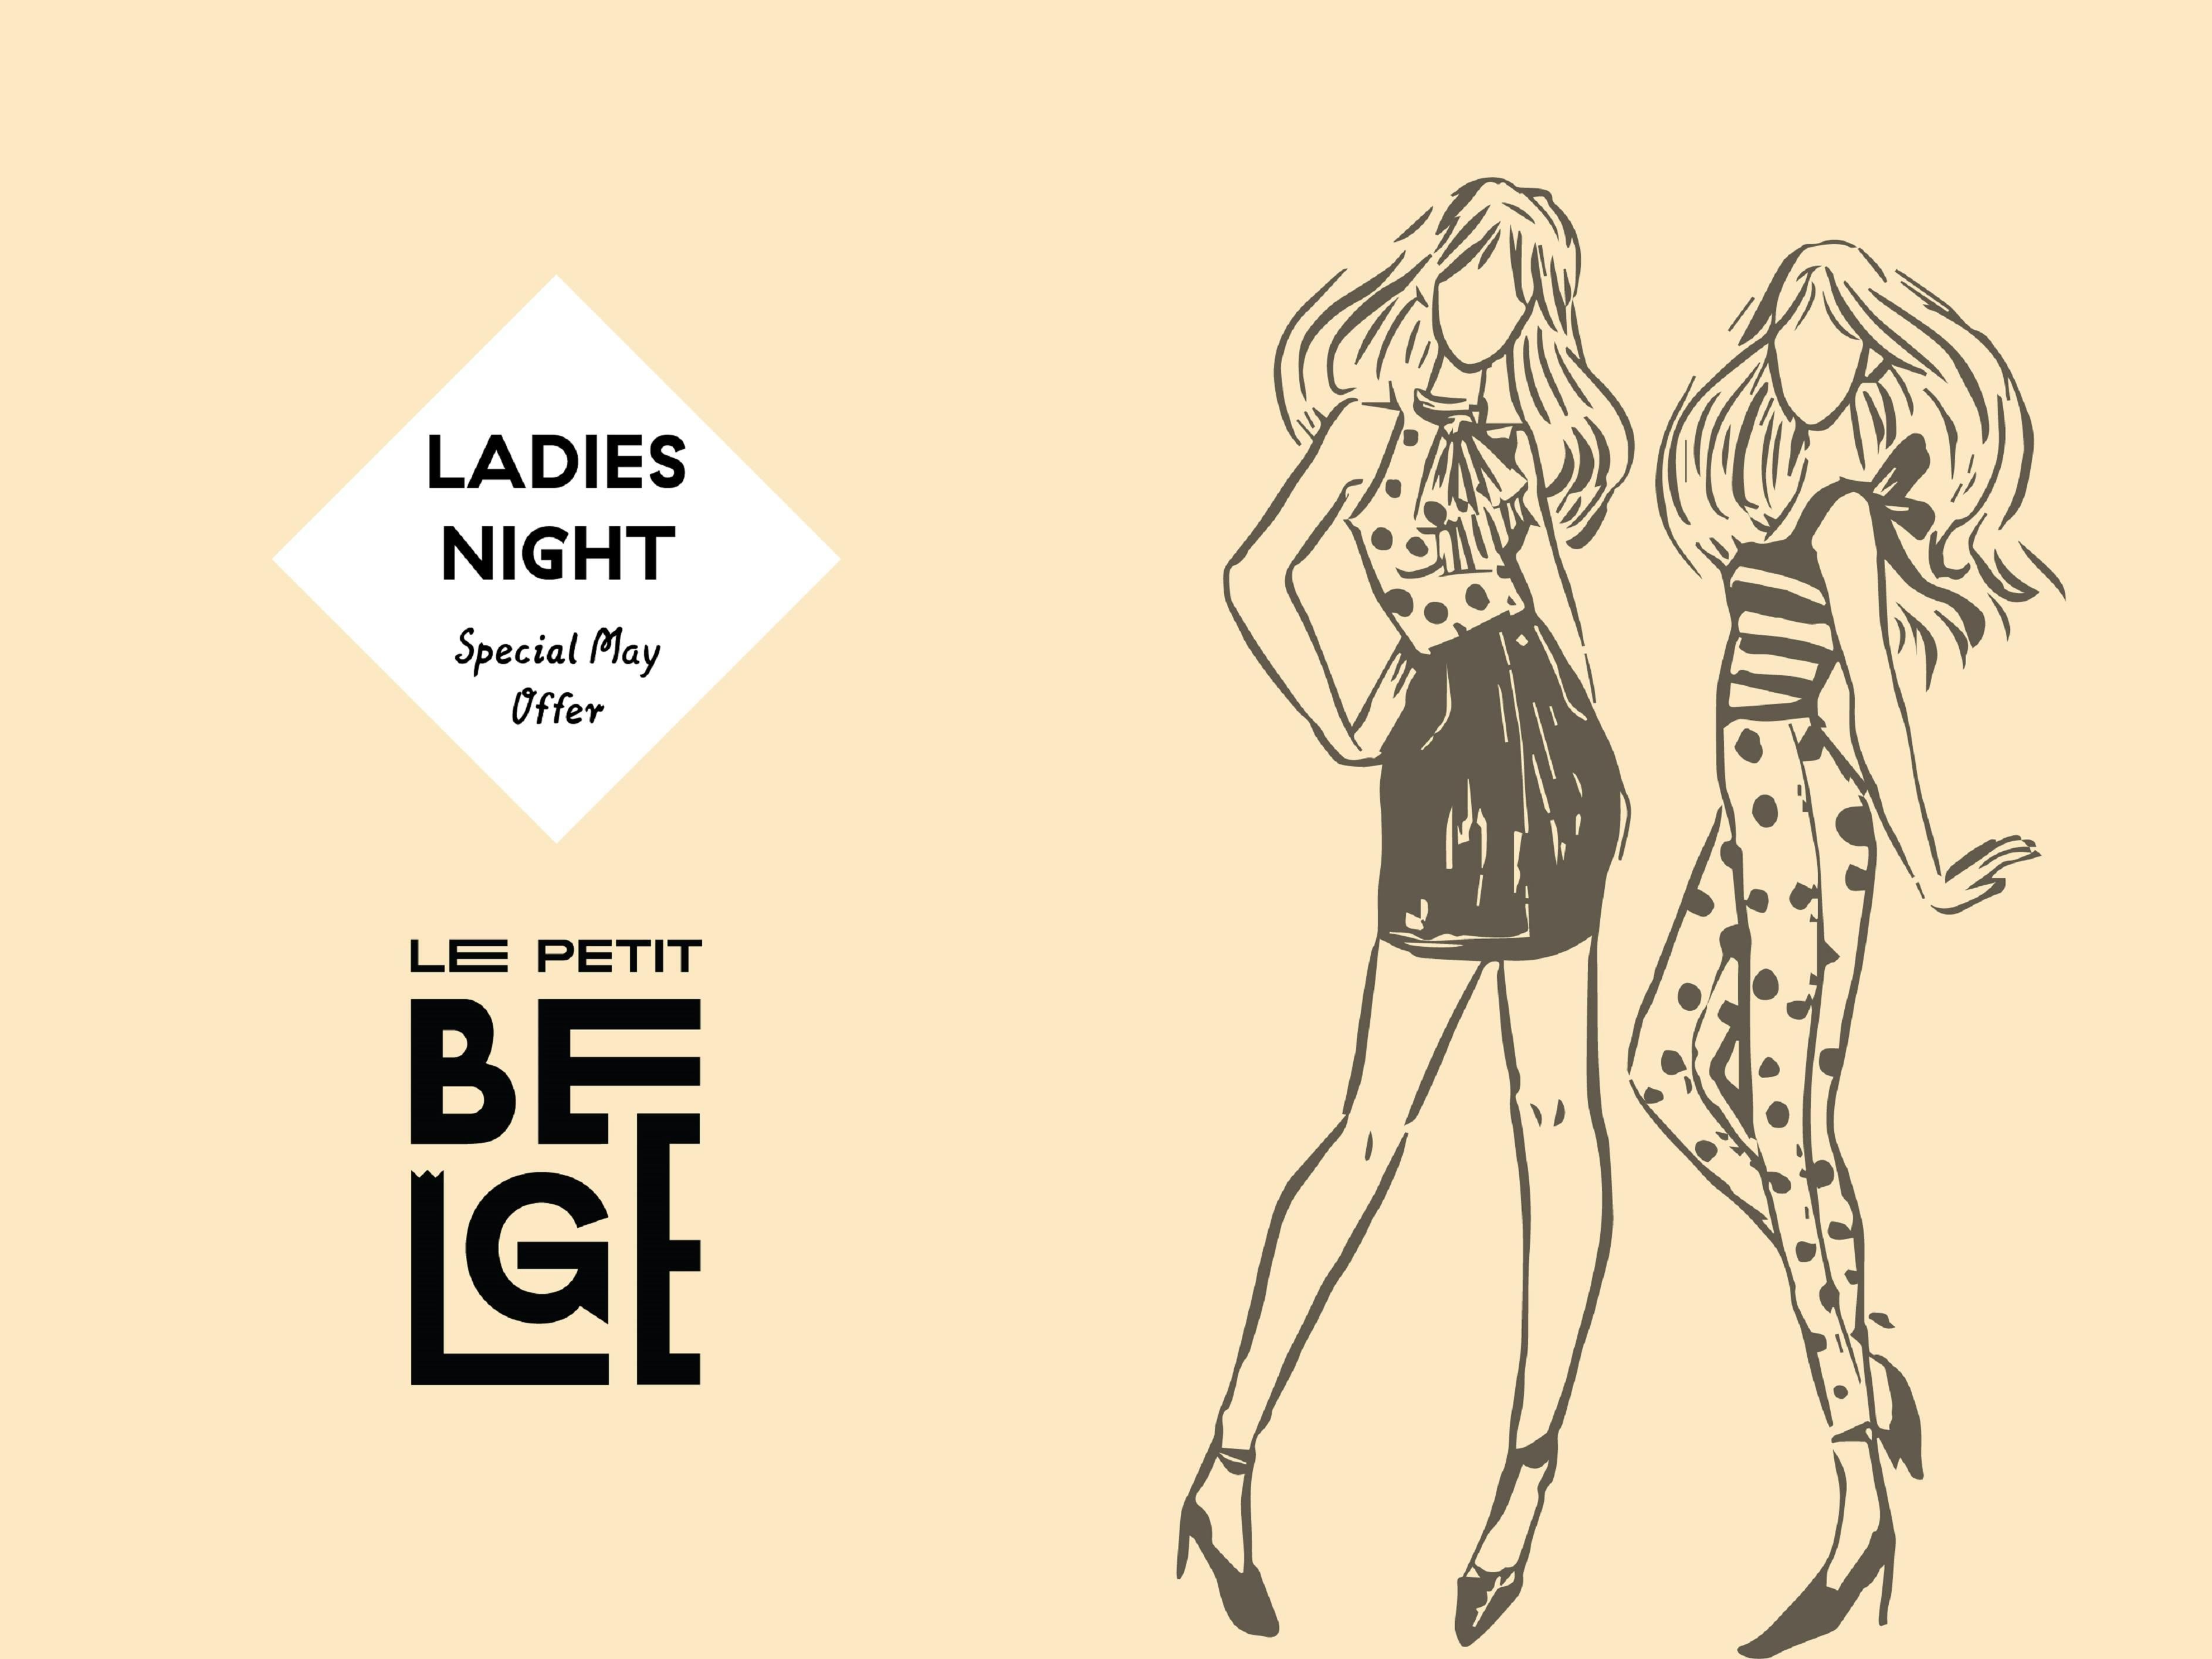 Ladies Night at Le Petit Belge